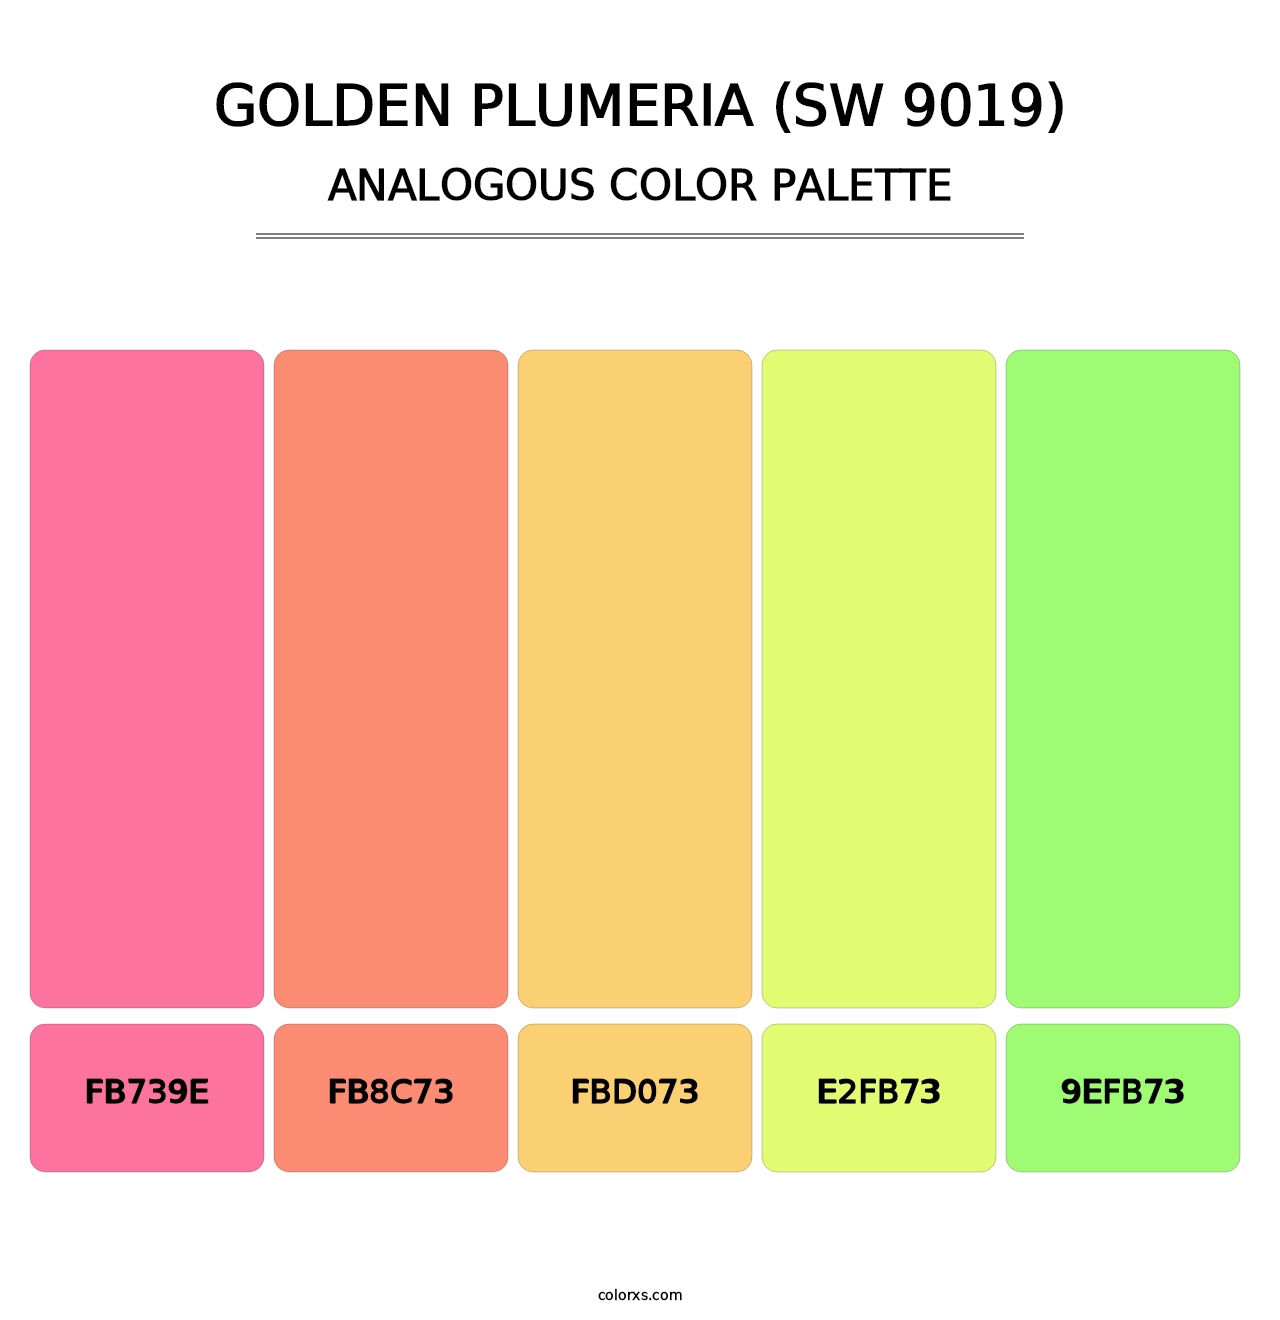 Golden Plumeria (SW 9019) - Analogous Color Palette